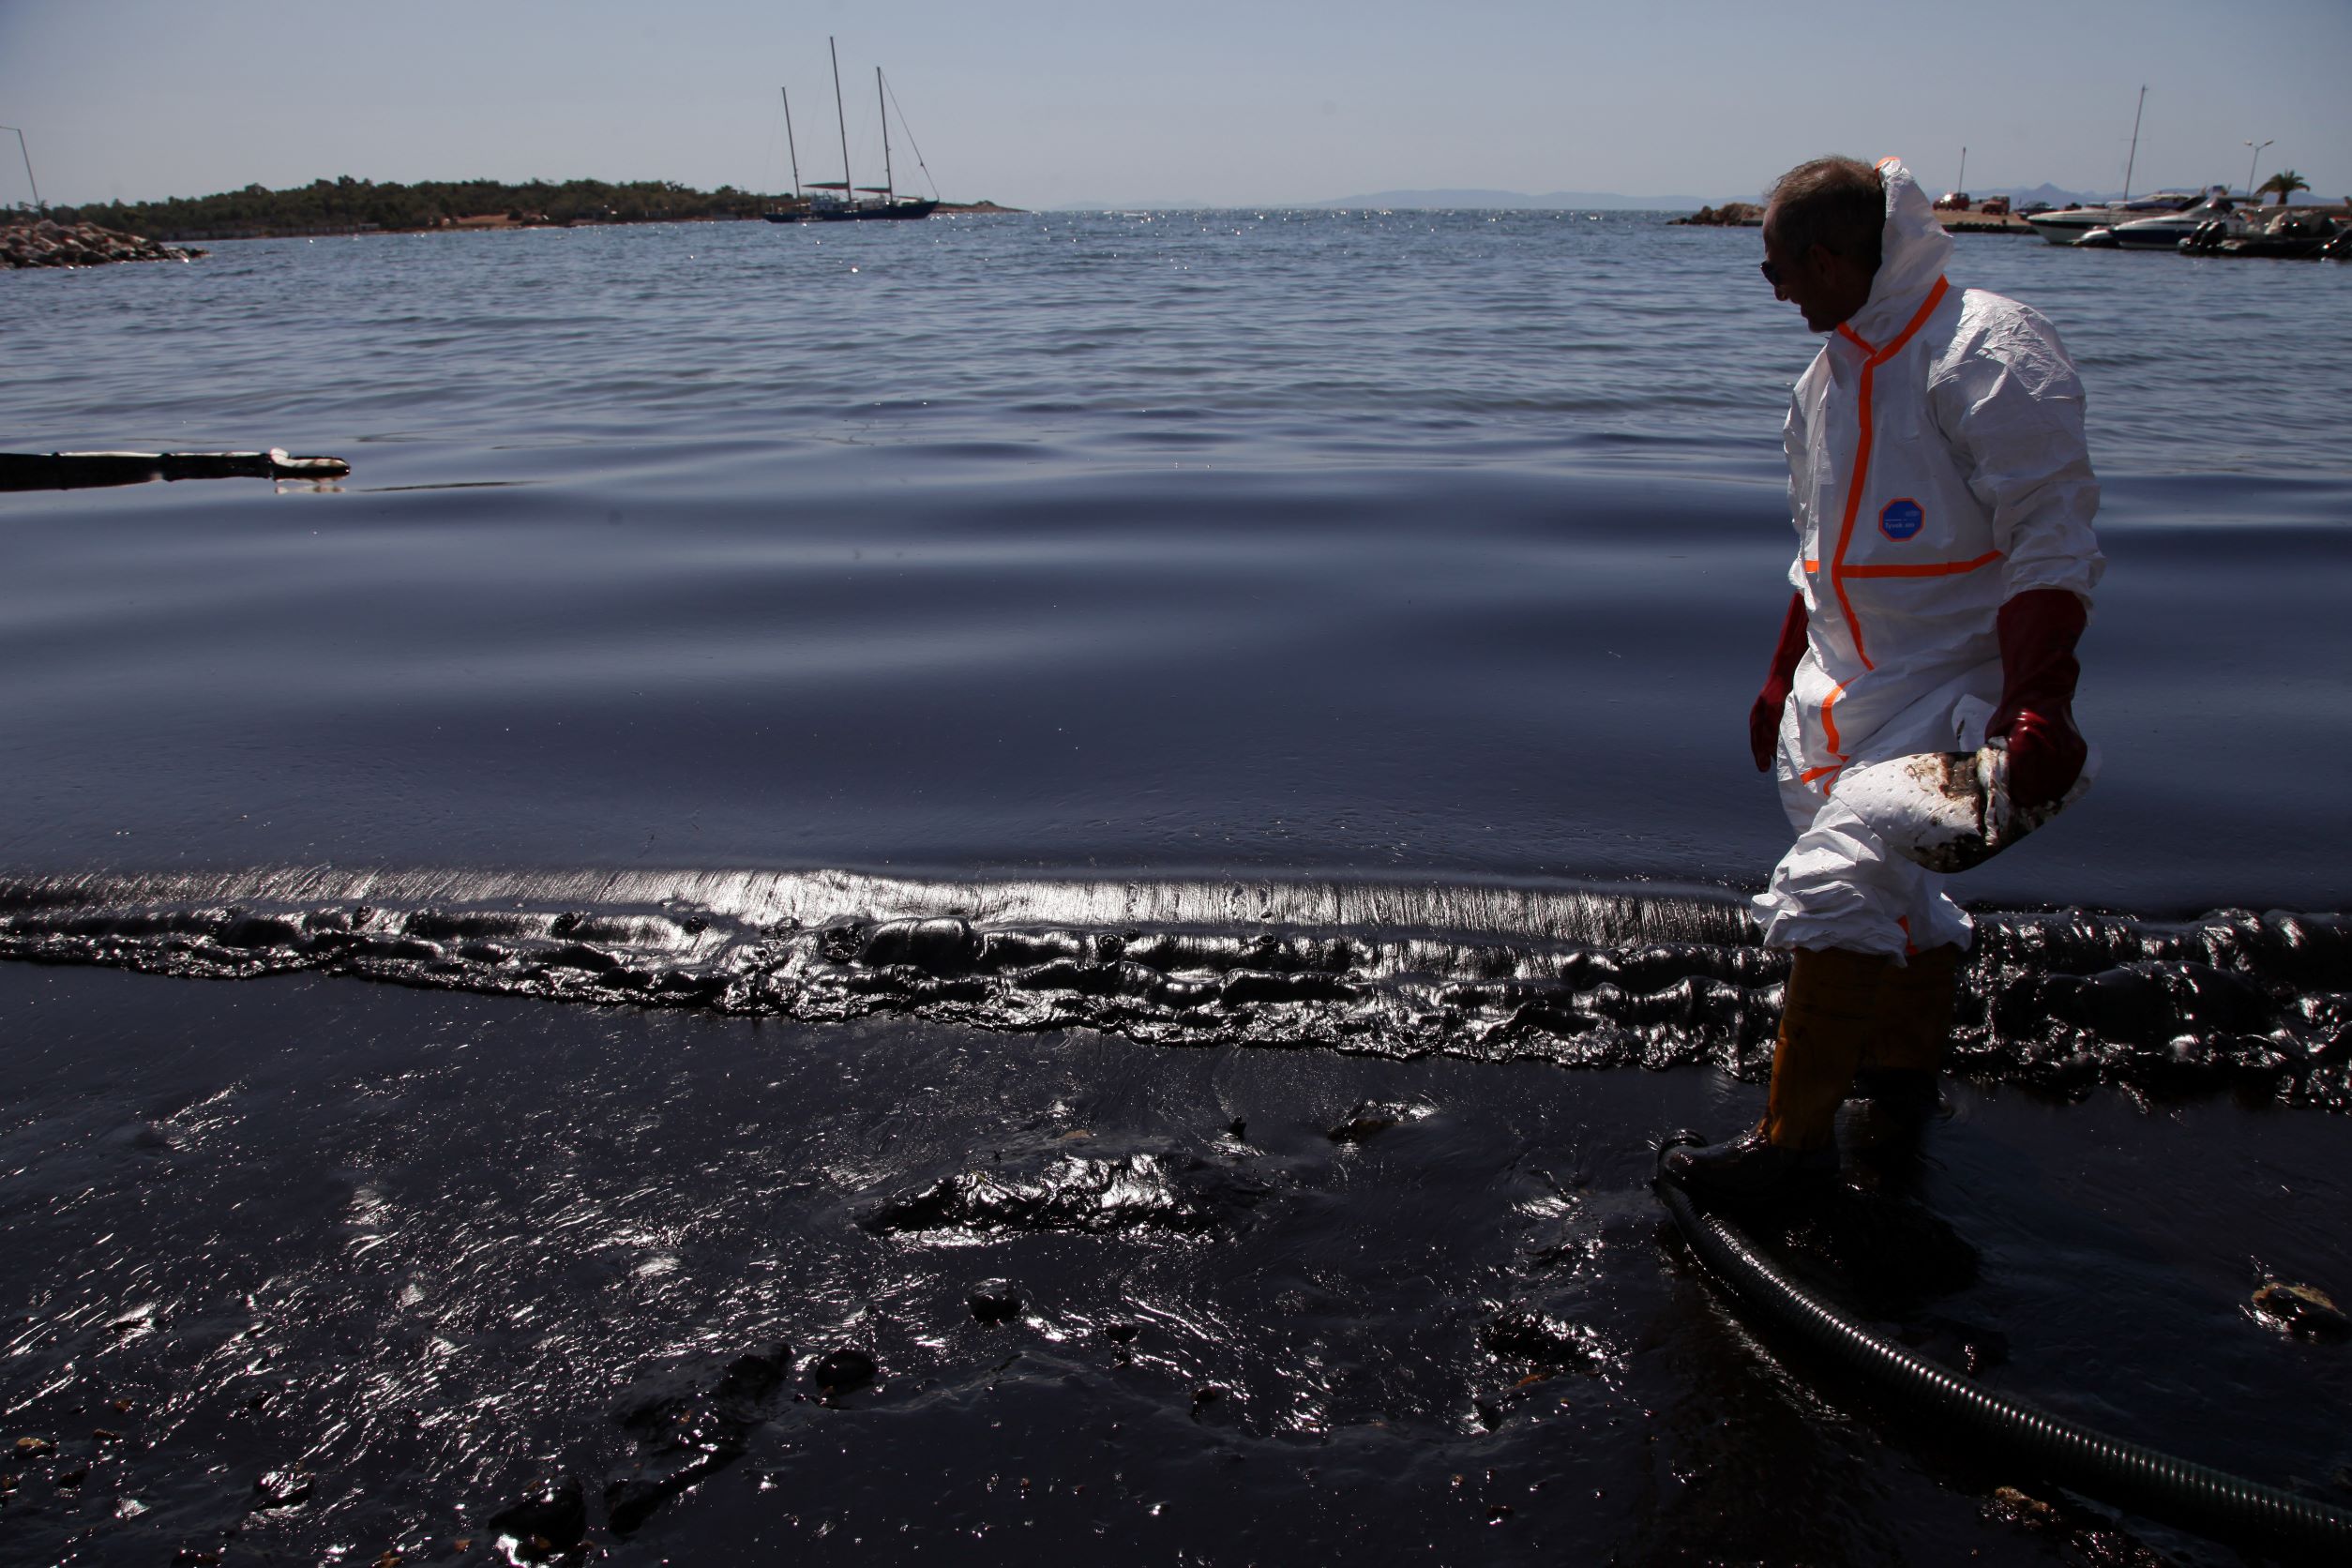 Σαρωνικός, 4 χρόνια μετά την πετρελαιοκηλίδα: Βουτήξαμε στα βαθιά νερά του ναυαγίου «Αγία Ζώνη ΙΙ»